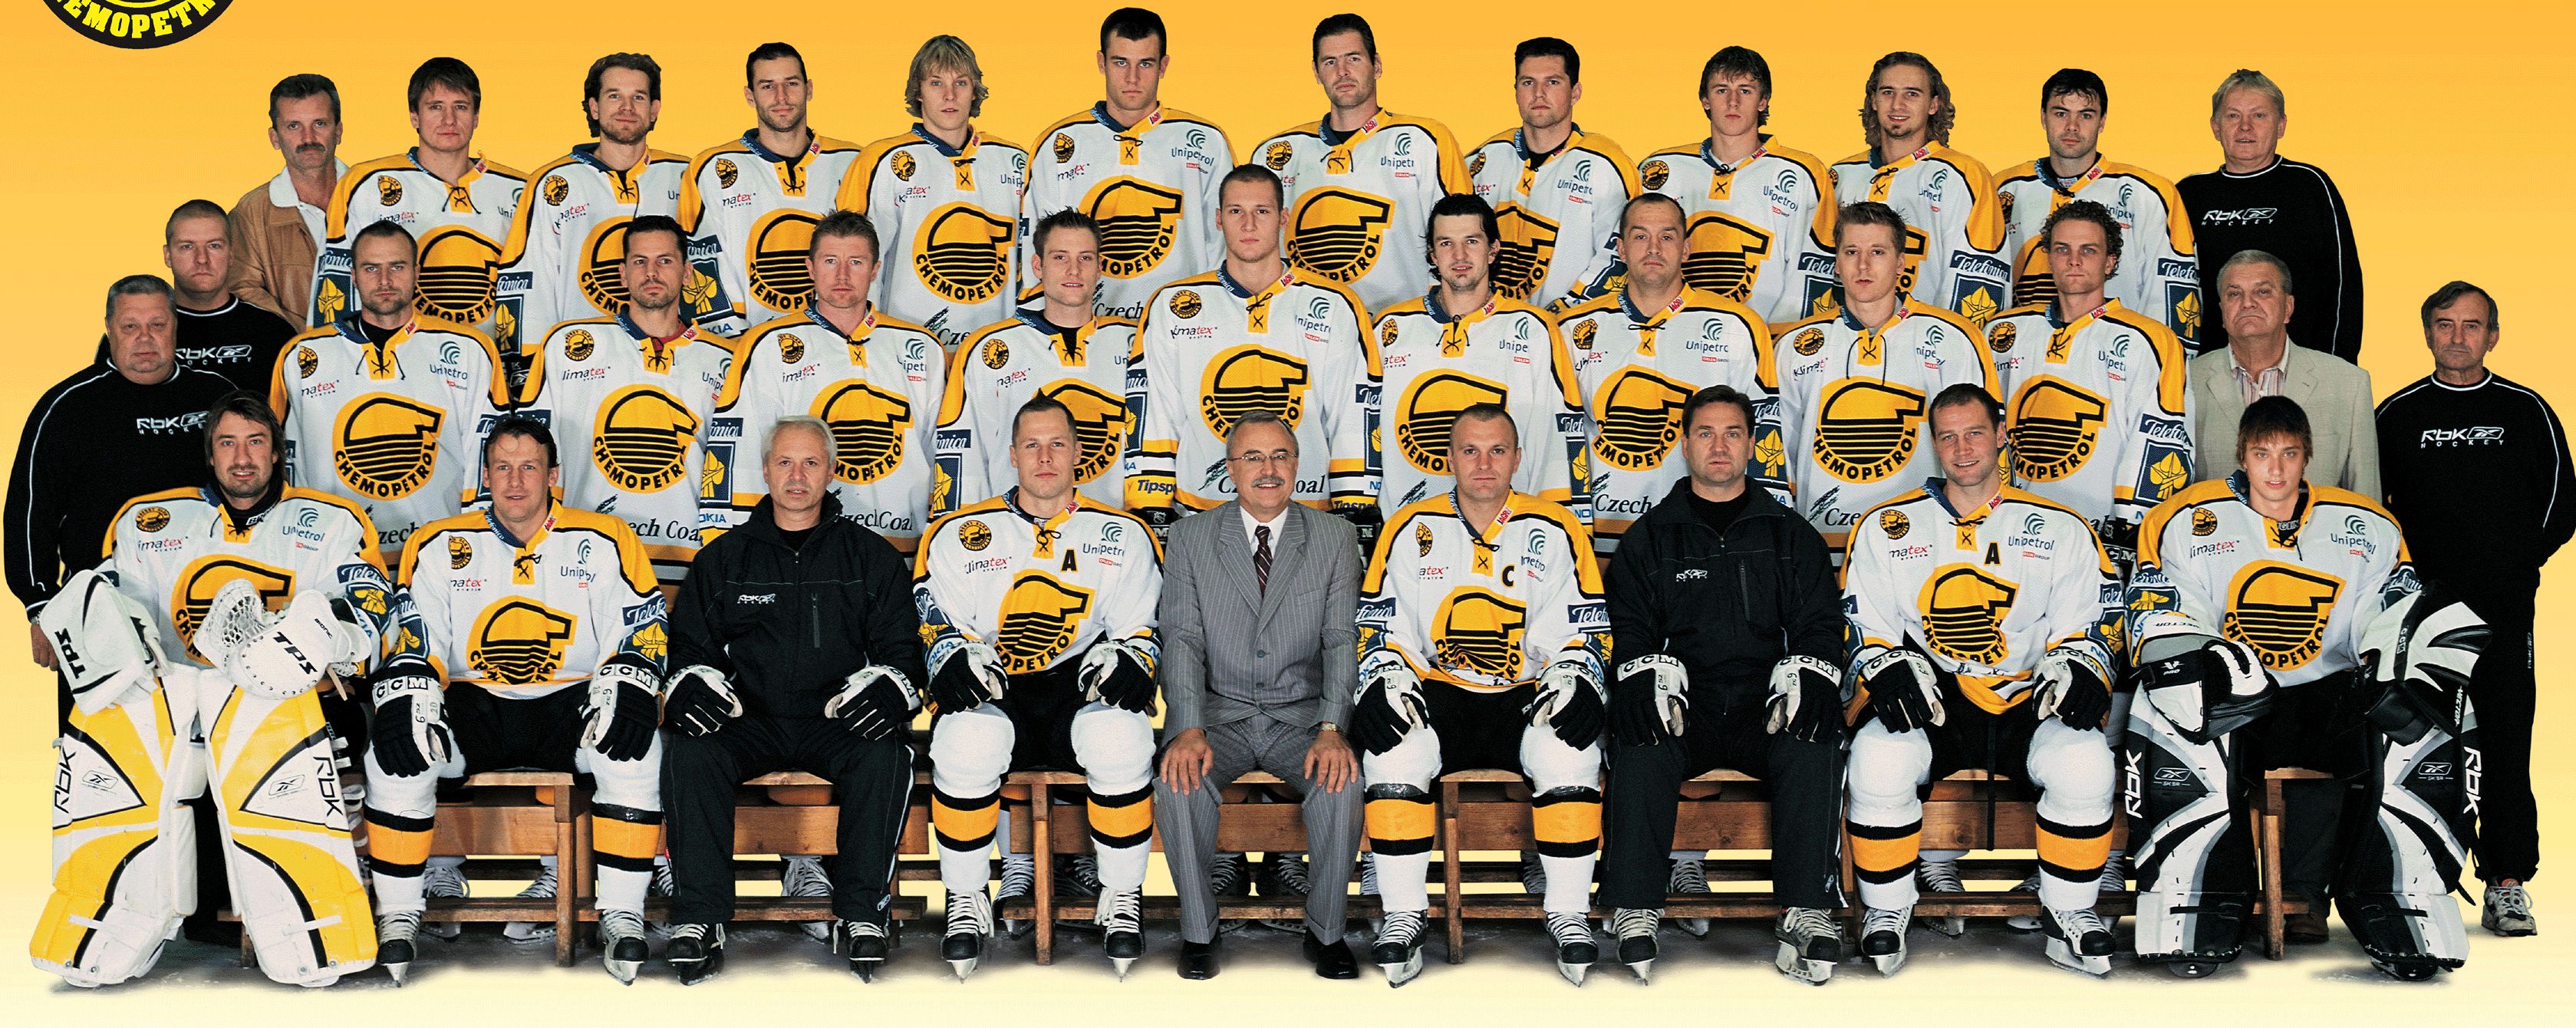 fotografie ze sezóny 2006-07